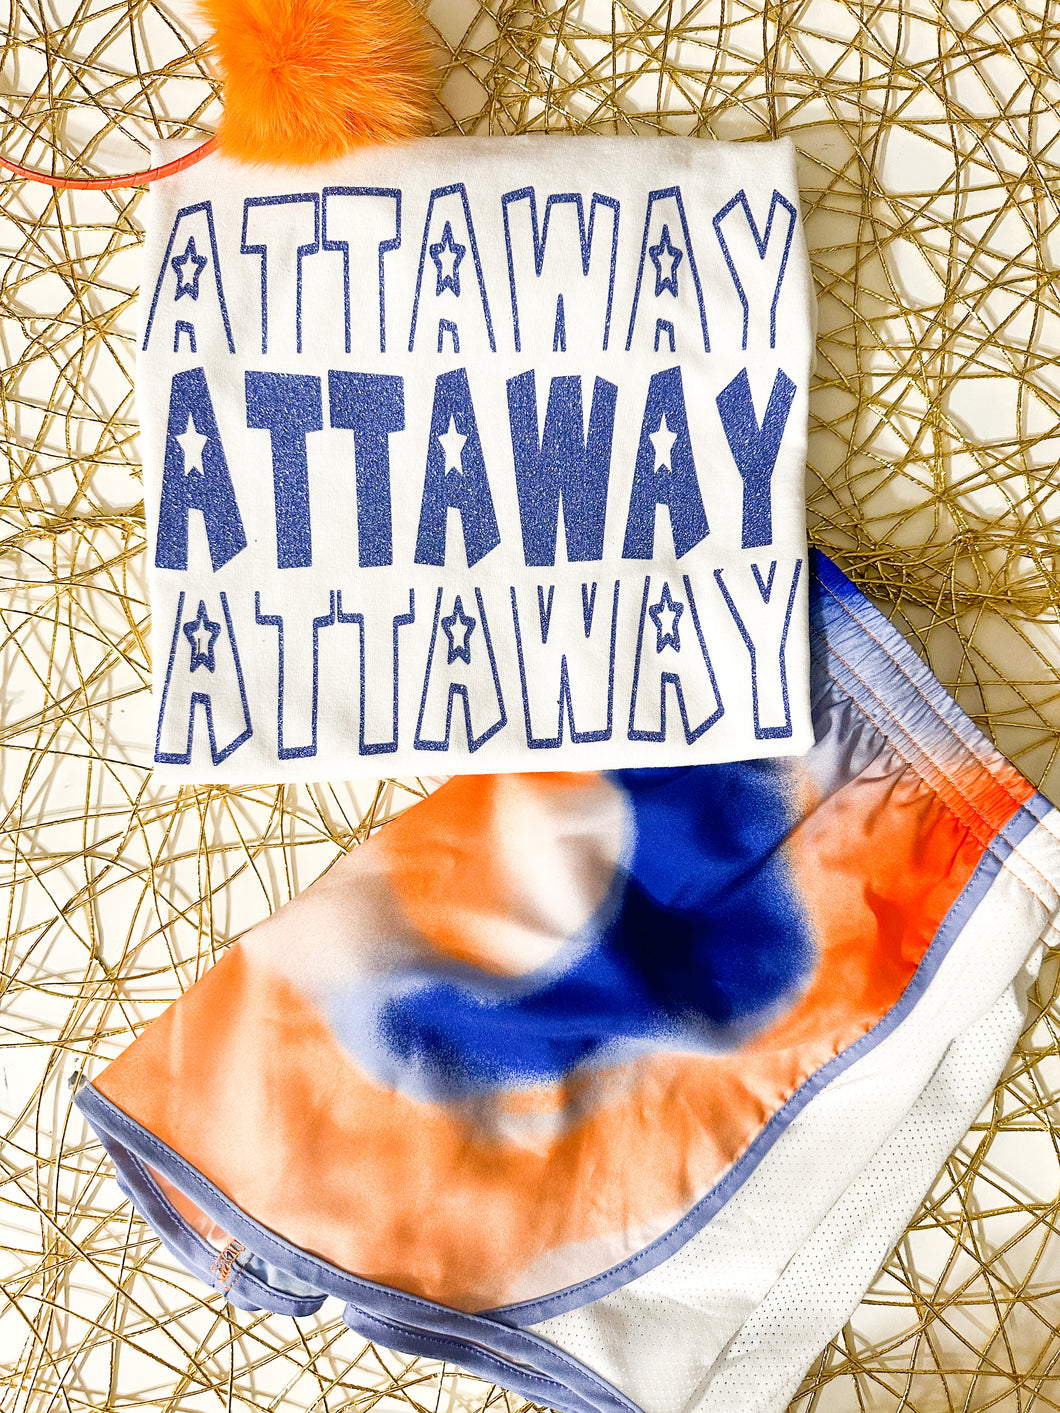 Attaway set - shorts and shirt